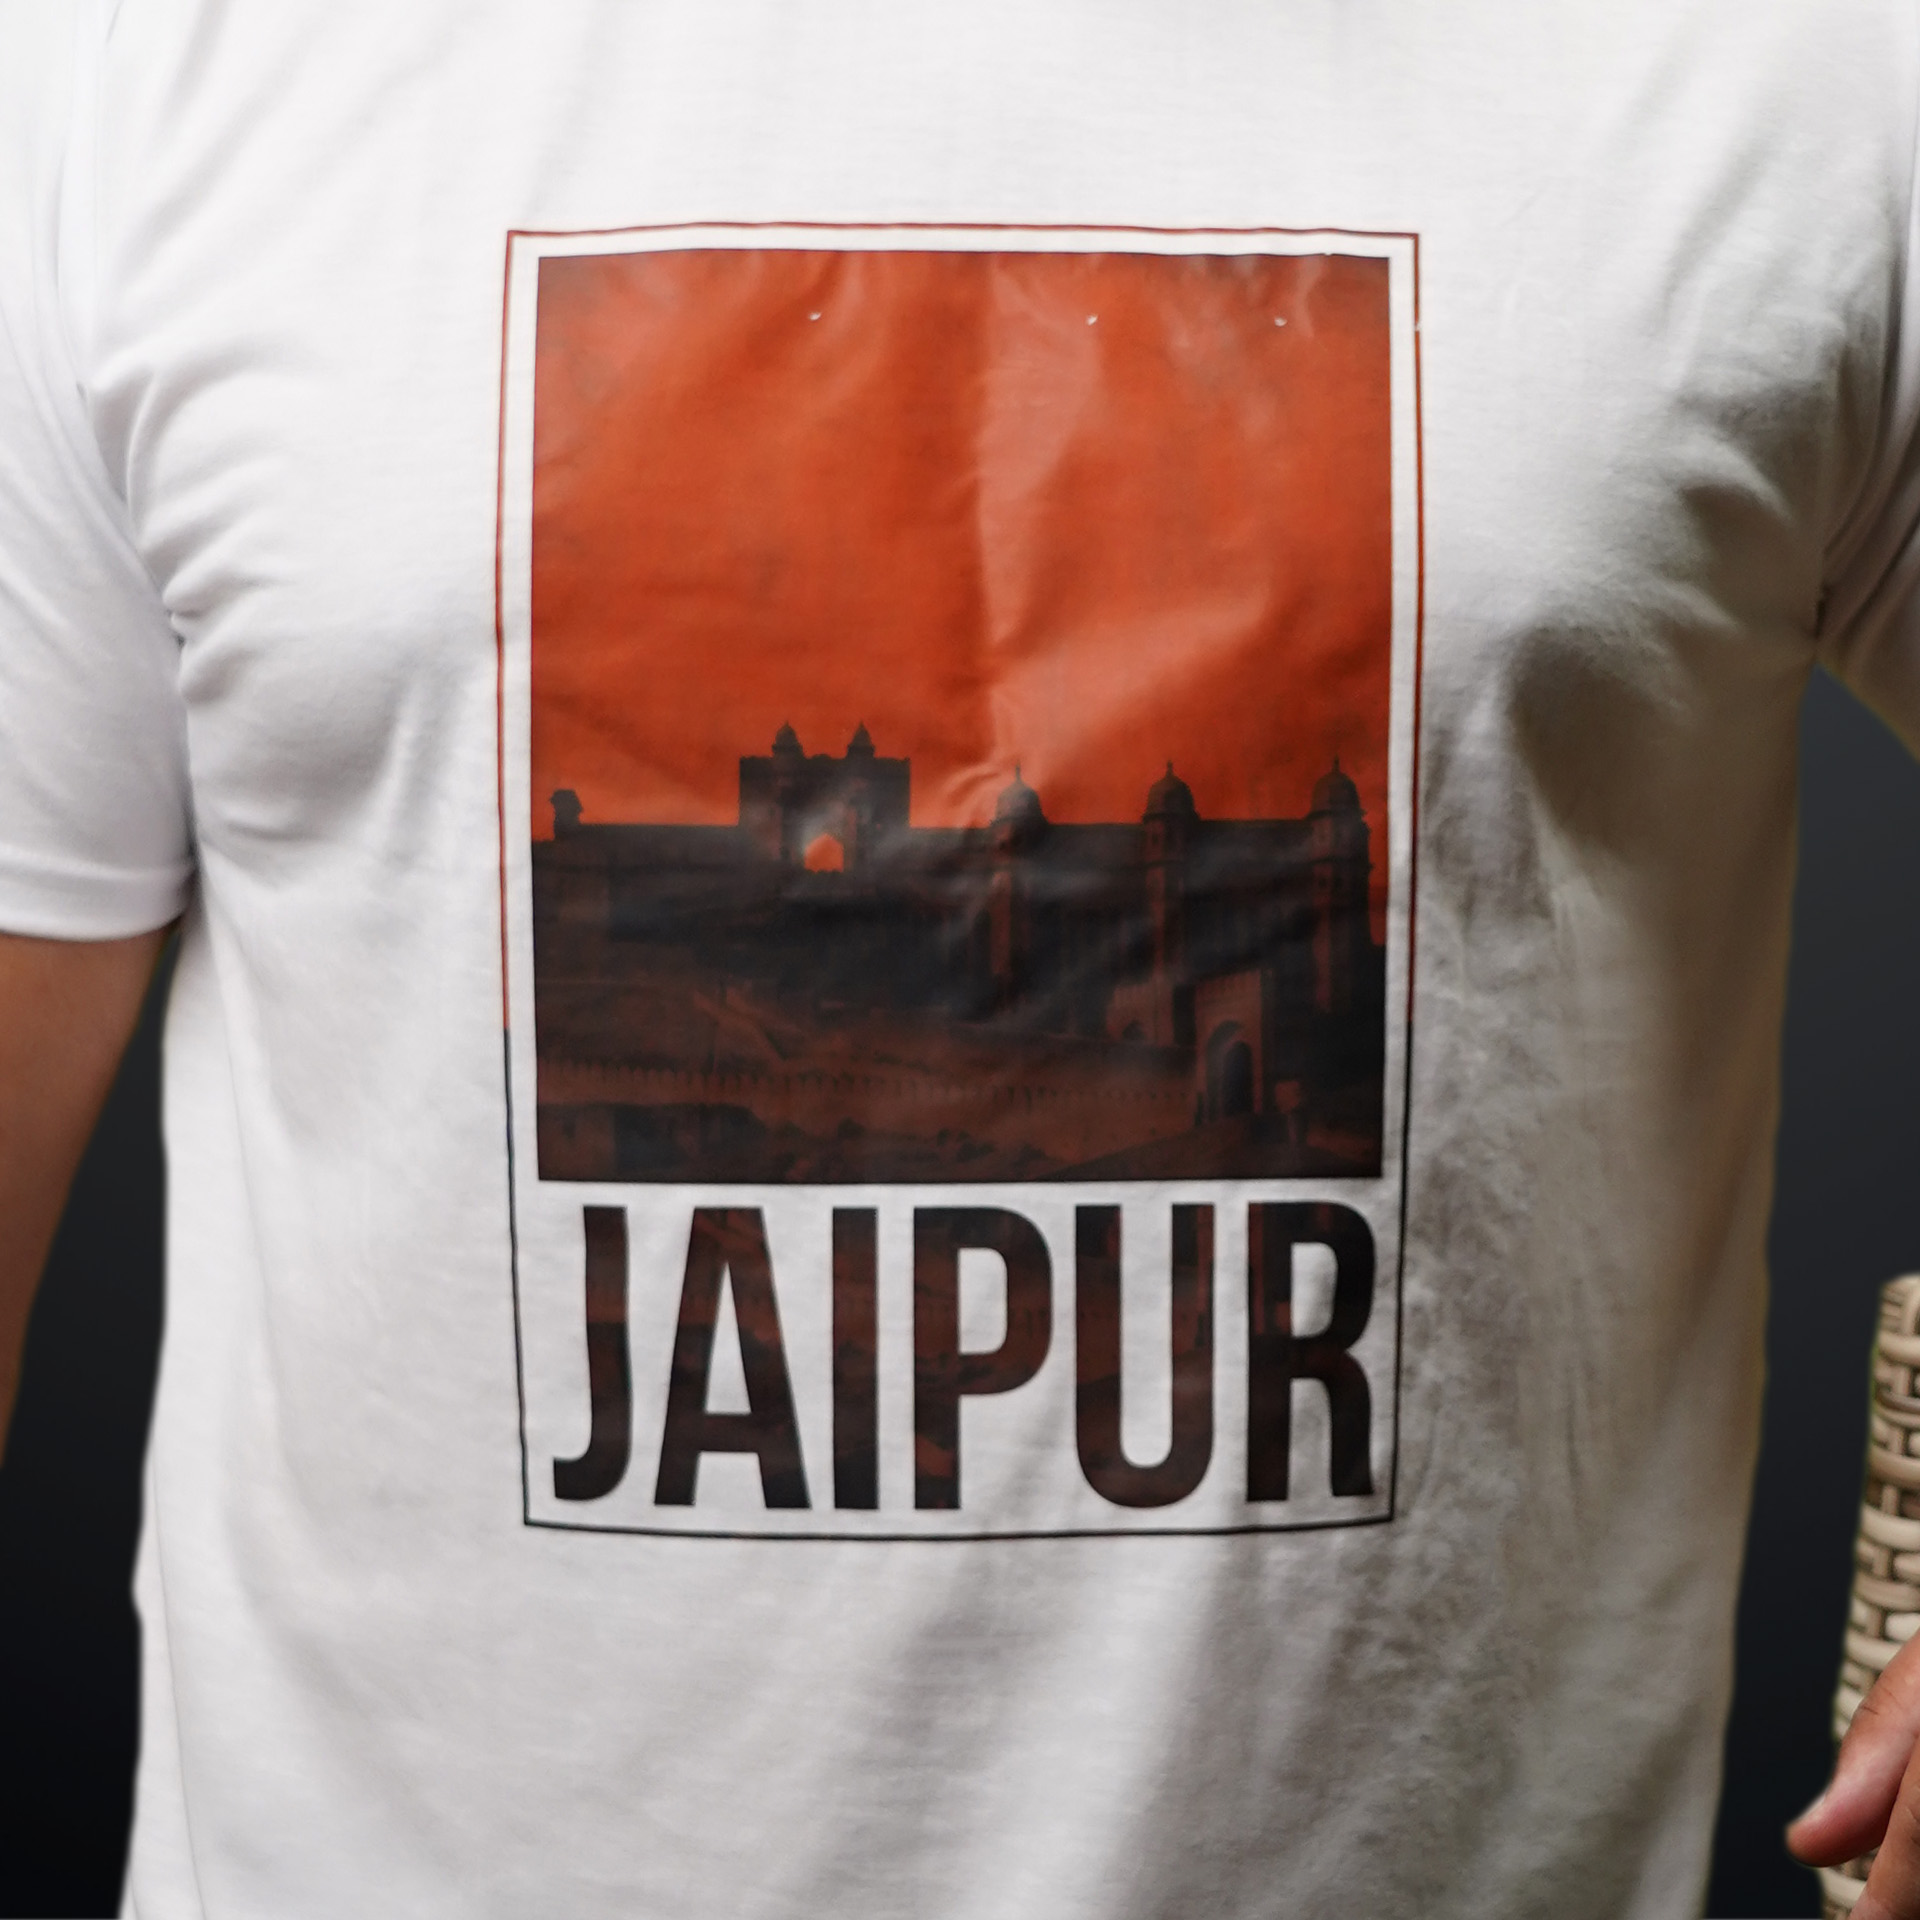 jaipur white tshirt